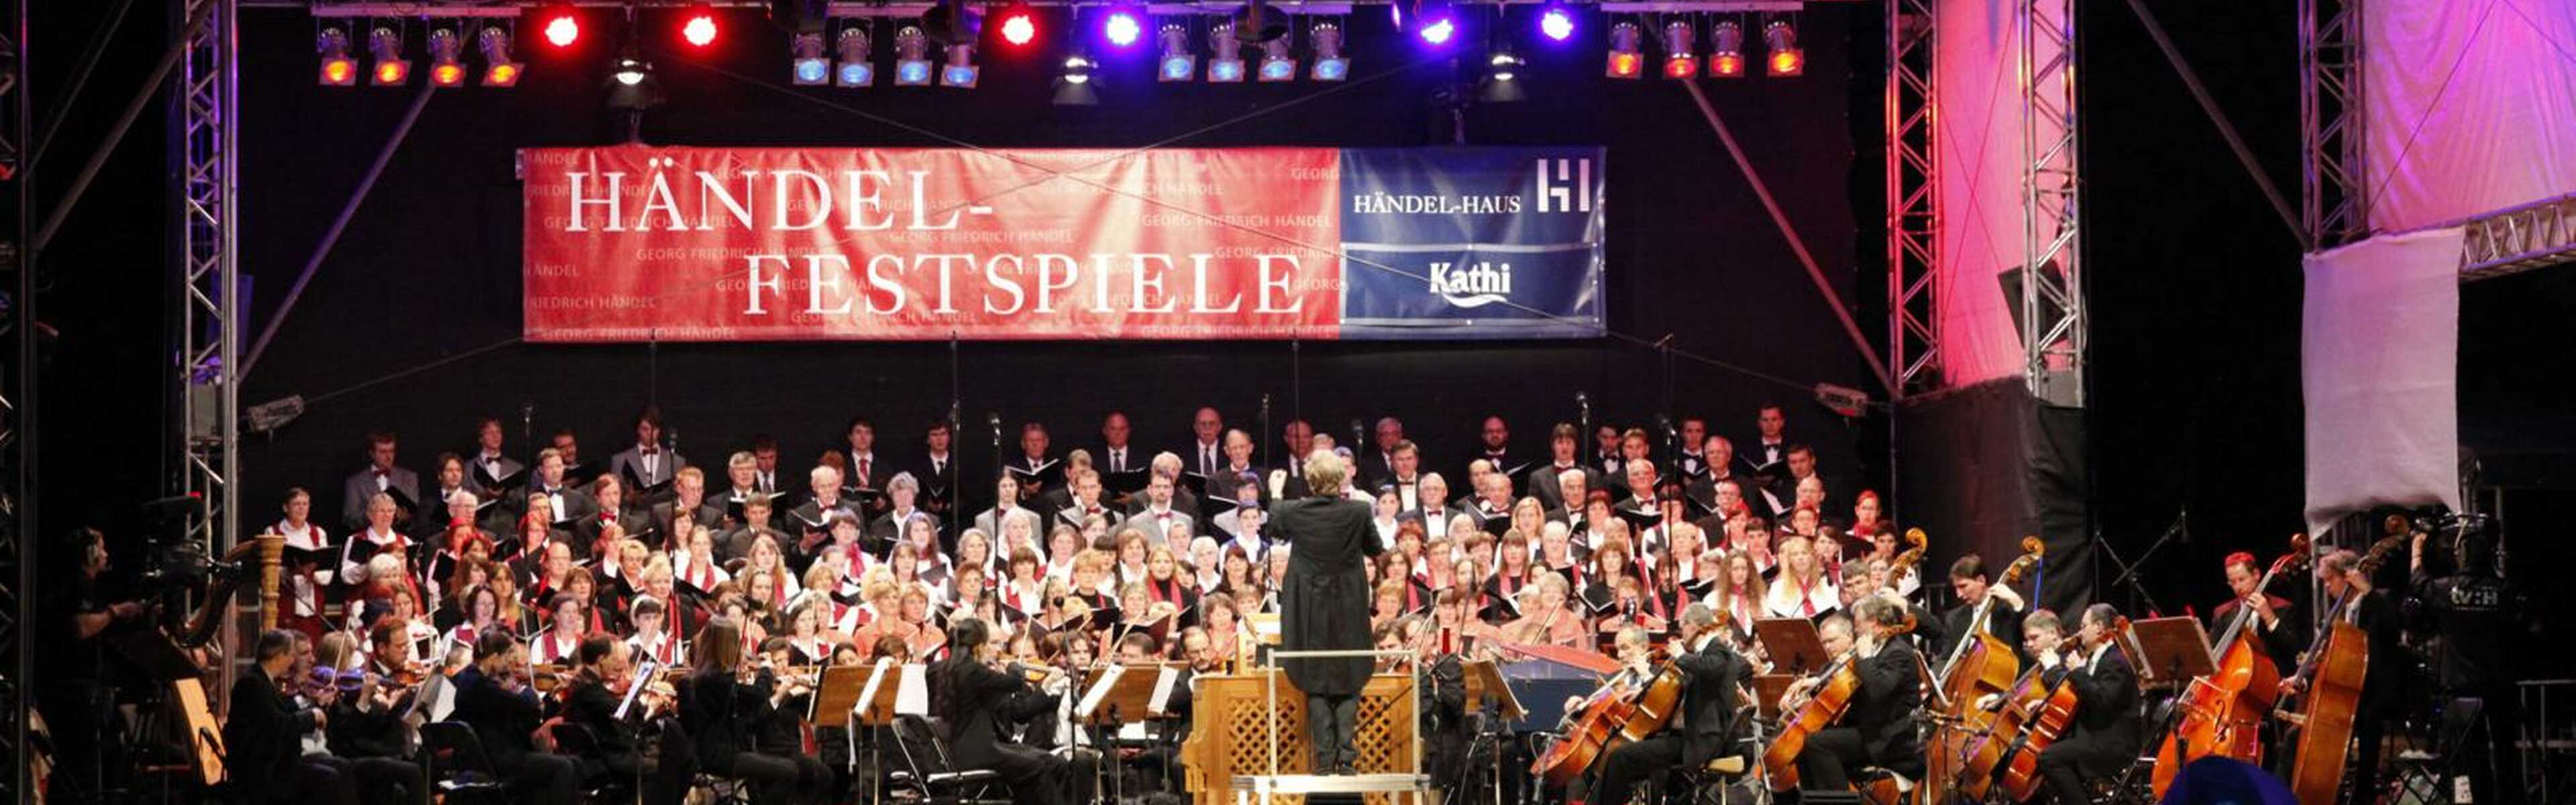 Händel-Festspiele